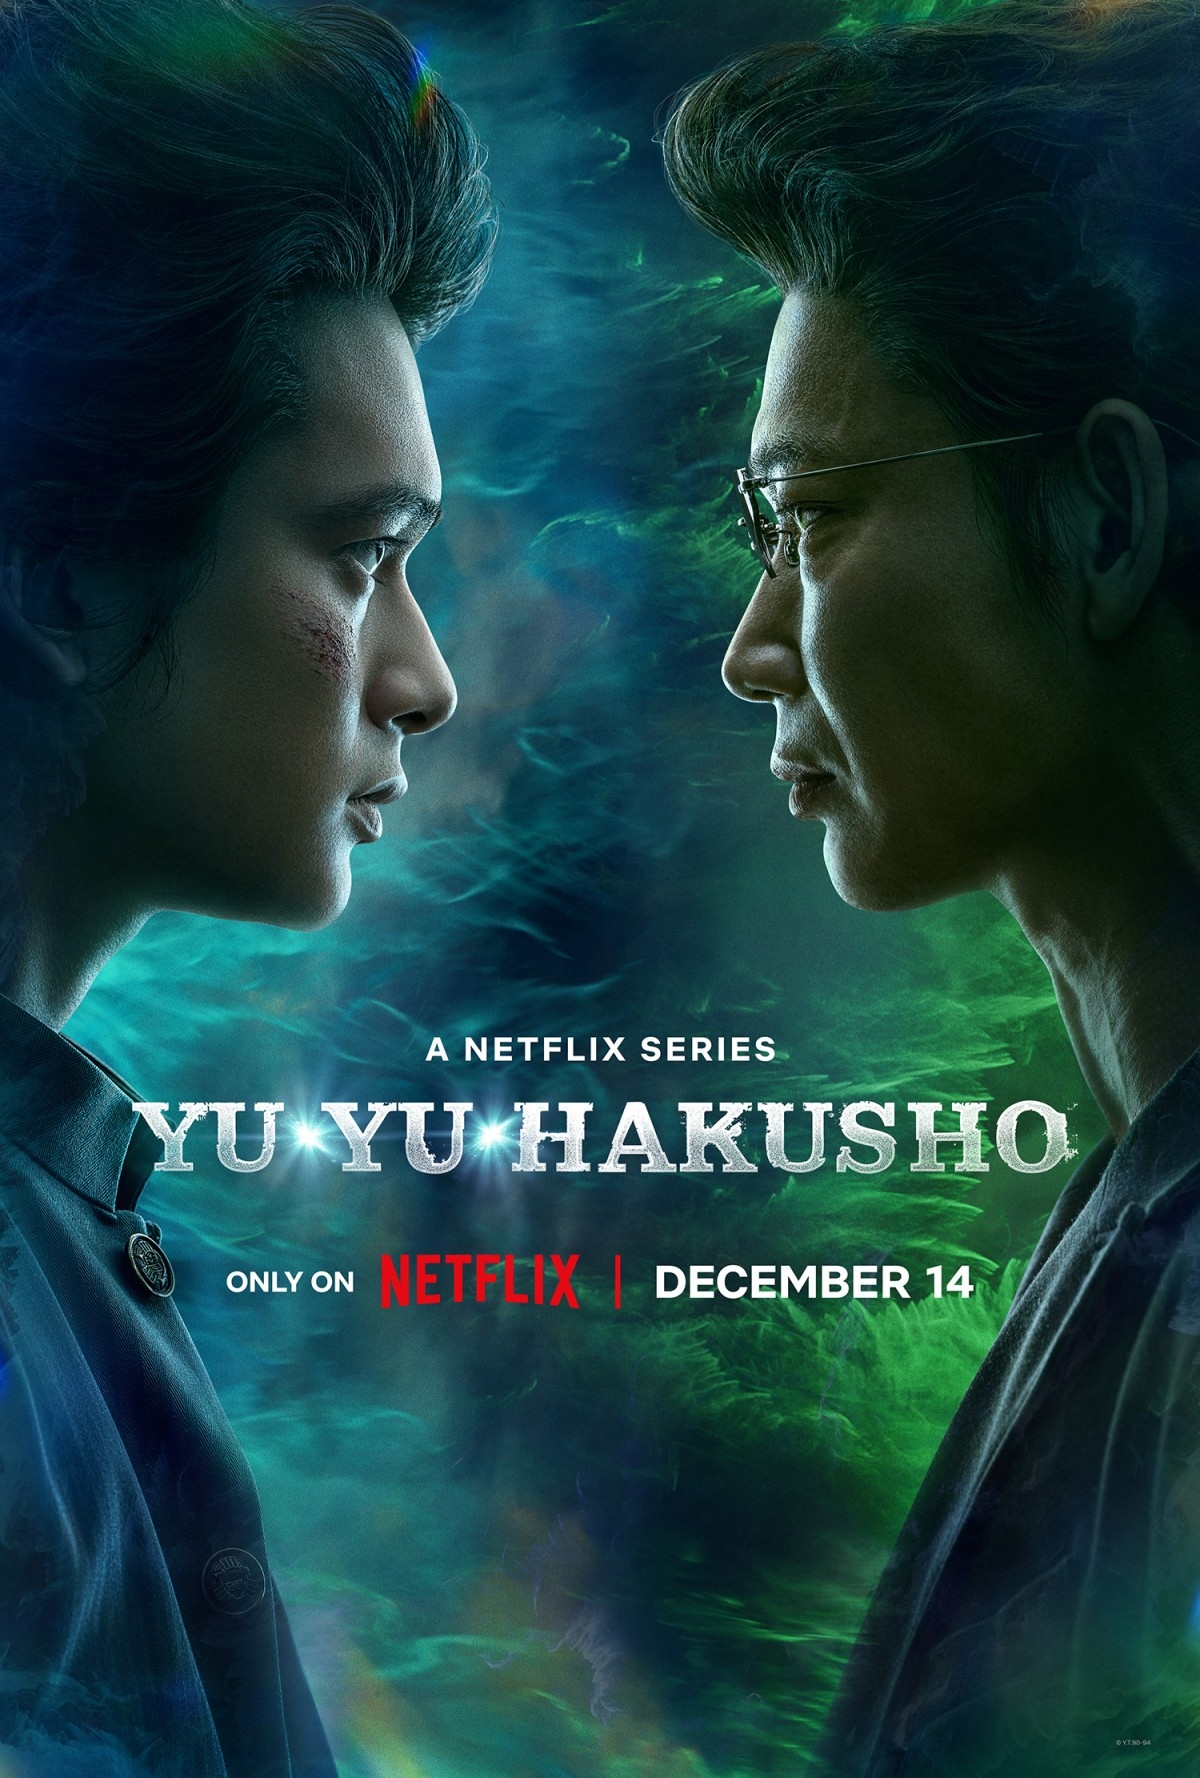 Netflix's 'Yu Yu Hakusho' Live-Action Cast Has Been Revealed